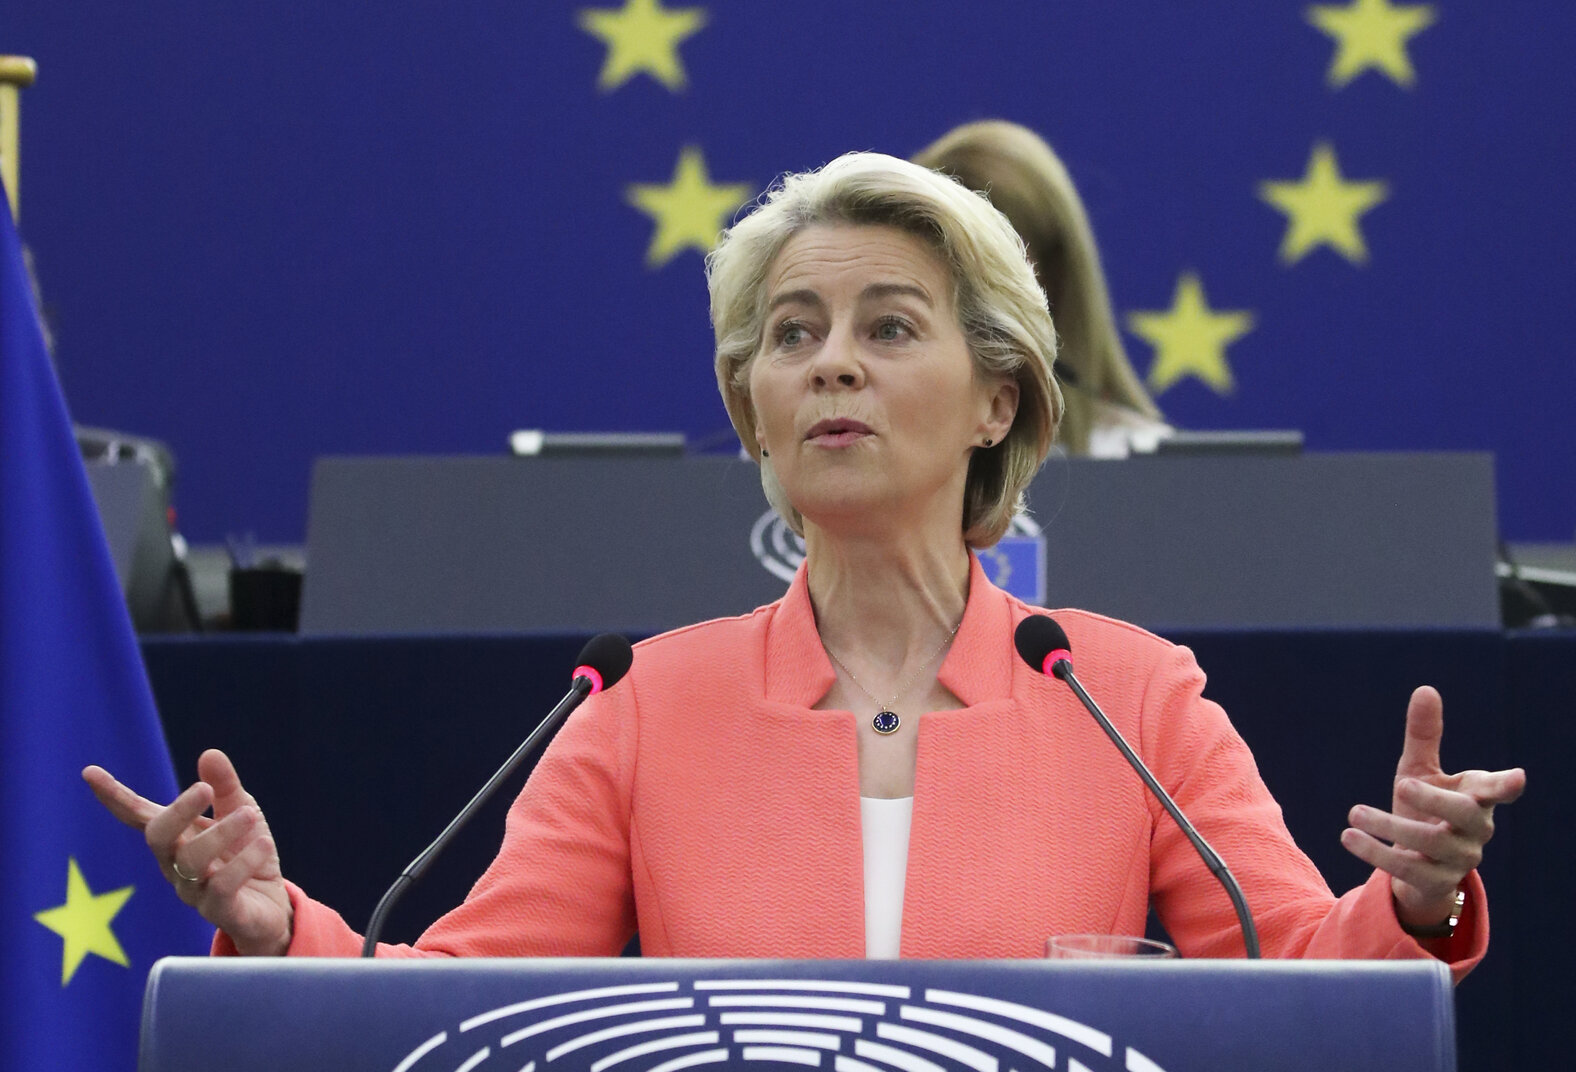 Ursula von der Leyen, state of the EU, EU defense